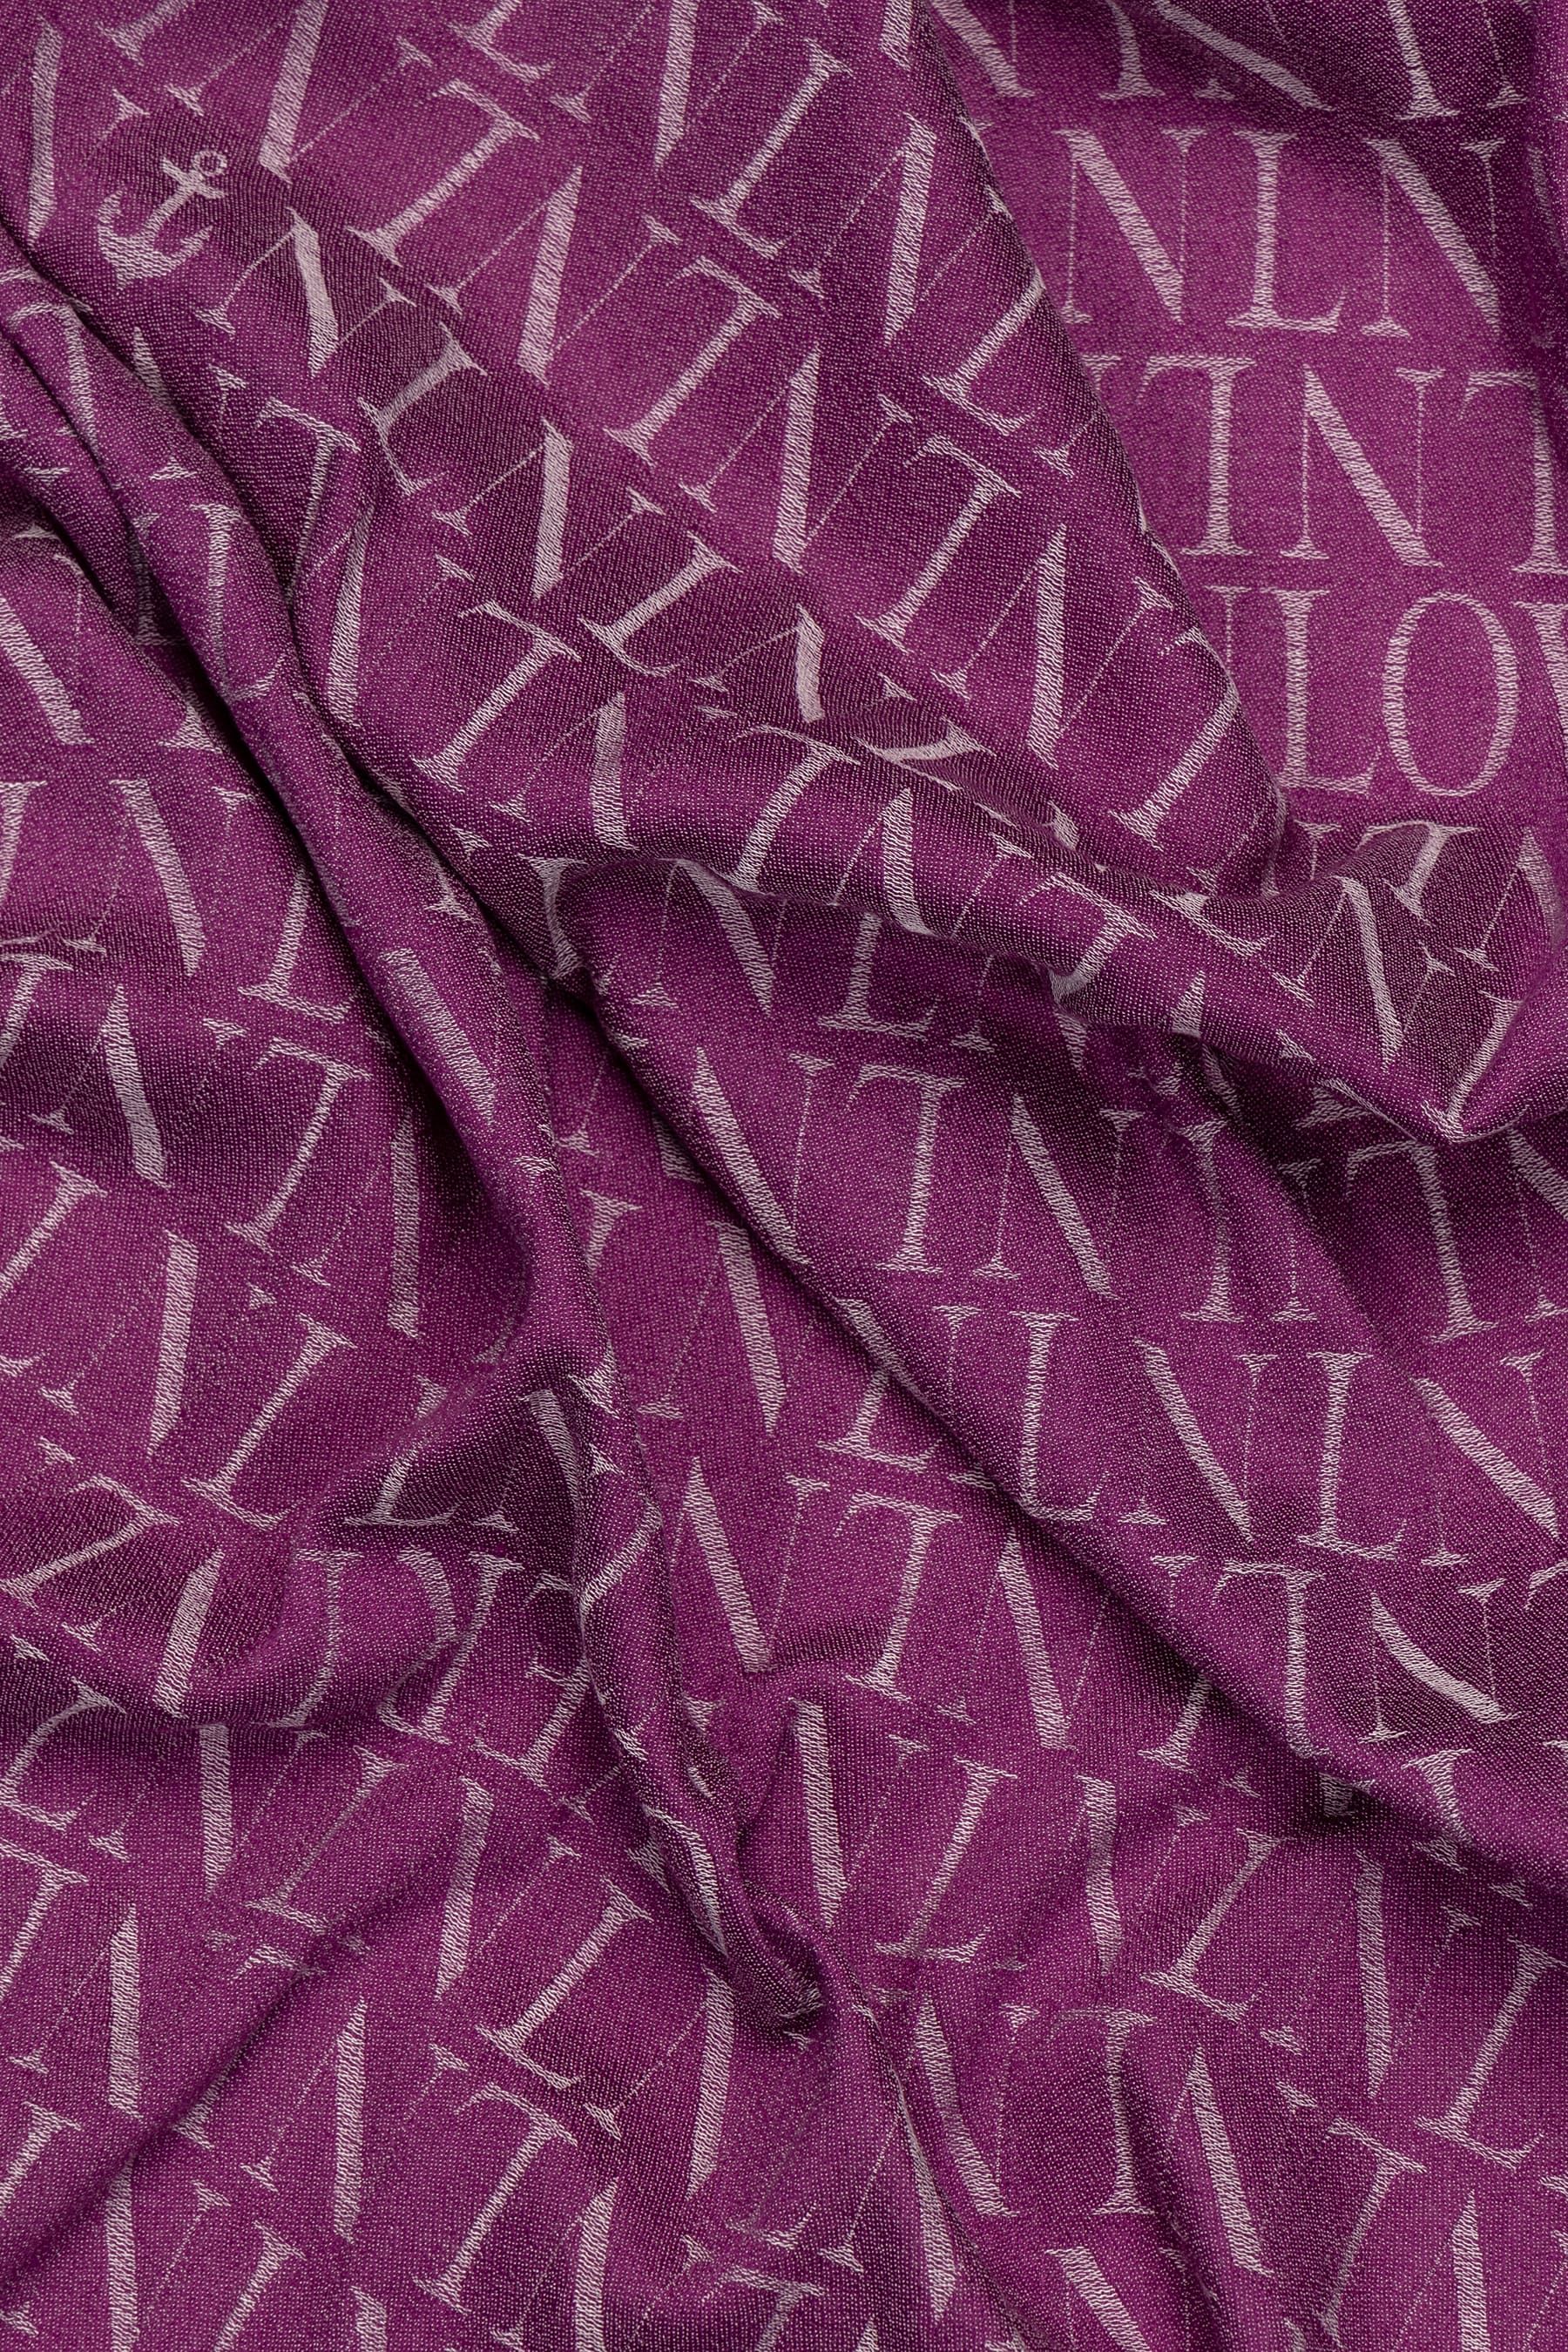 Pañuelo violeta con el estampado NL, un clásico de nuestra marca